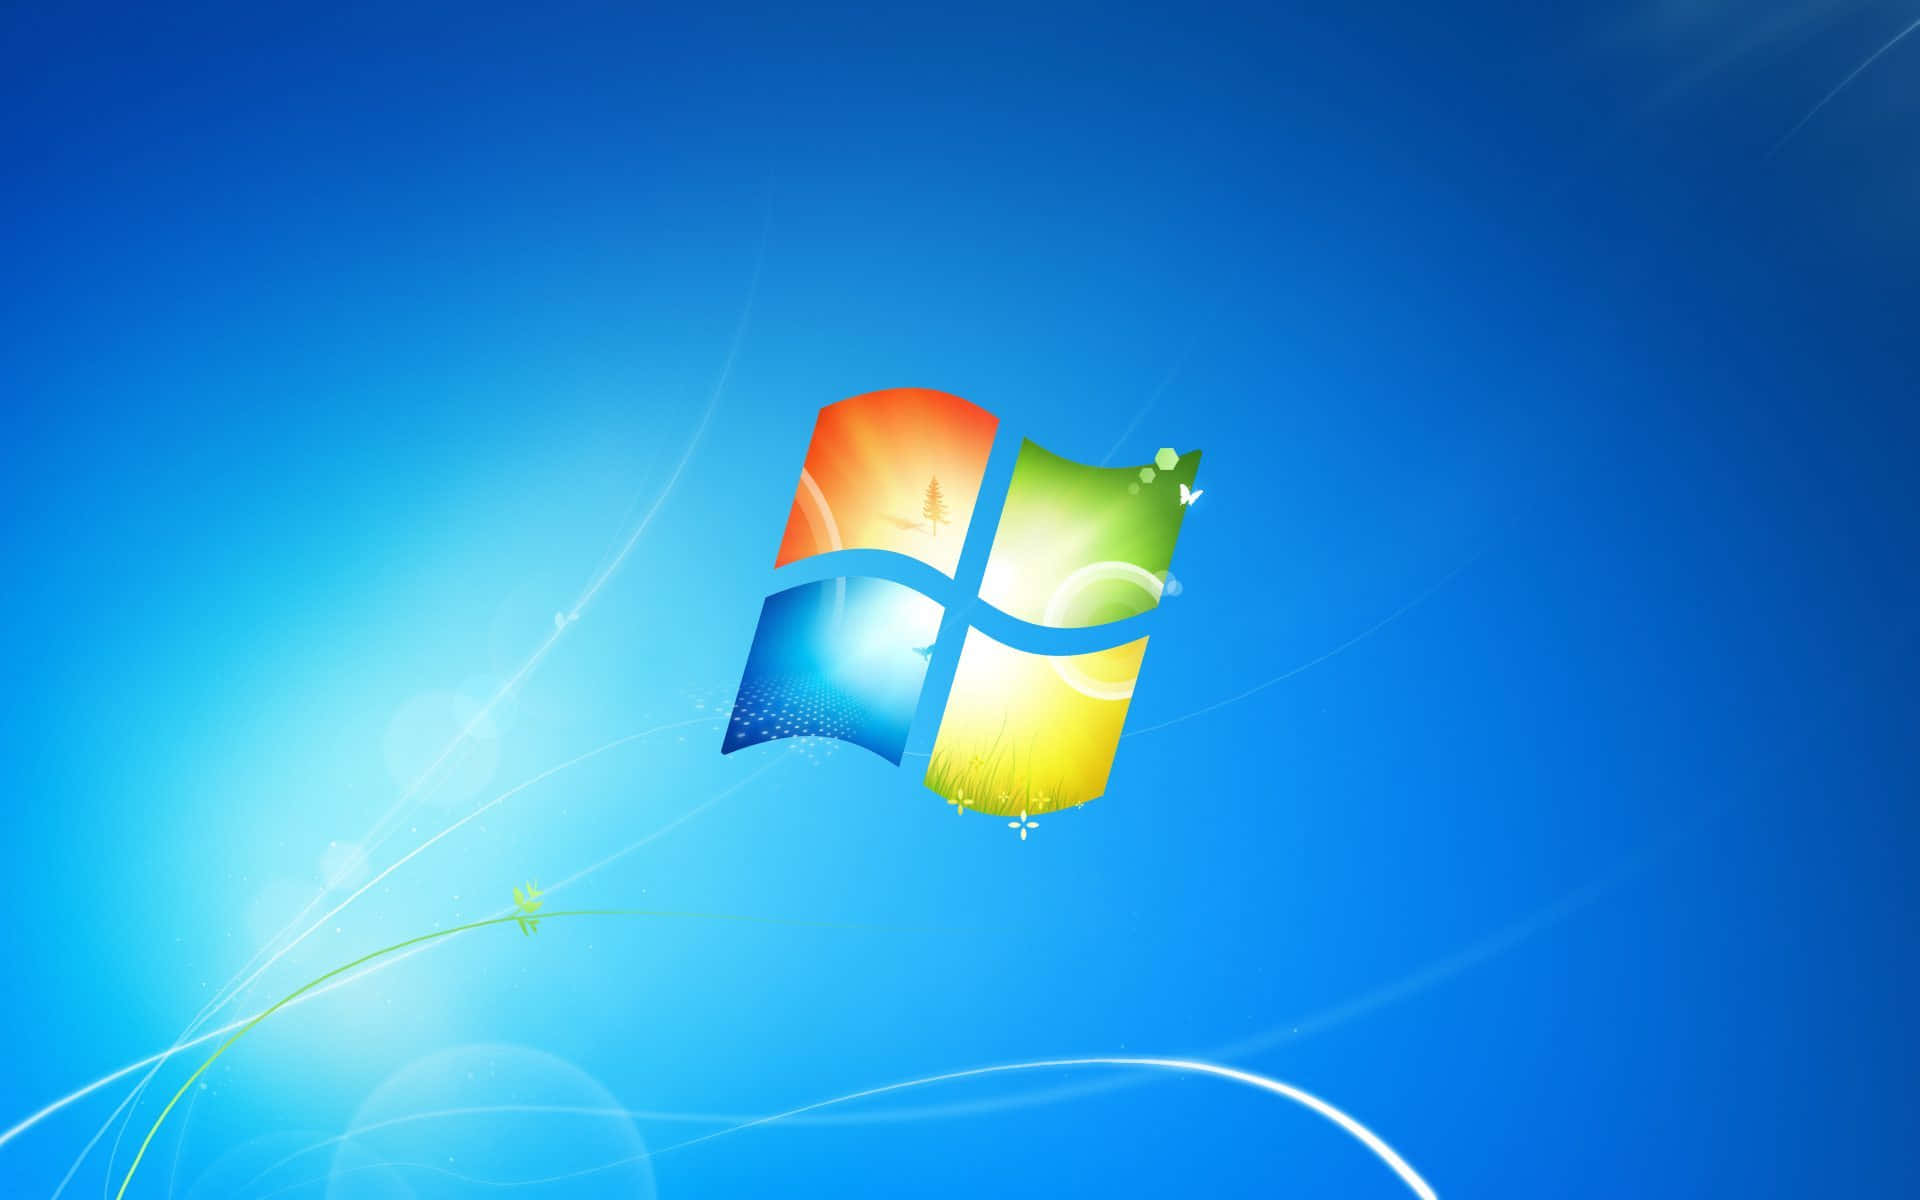 Sfondoarmonioso Di Windows 7 In Blu